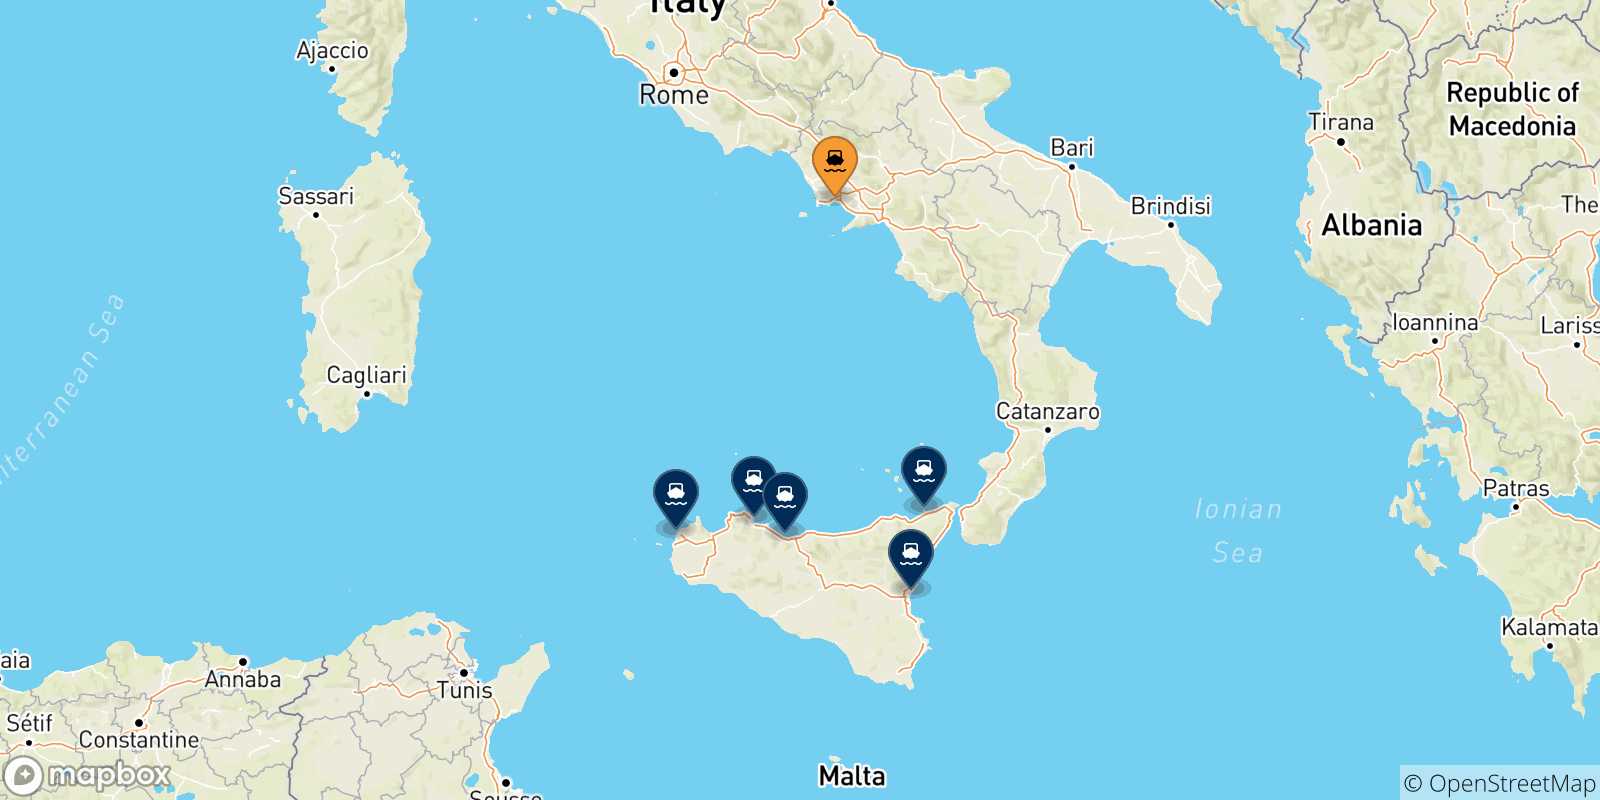 Mappa delle possibili rotte tra Napoli e la Sicilia